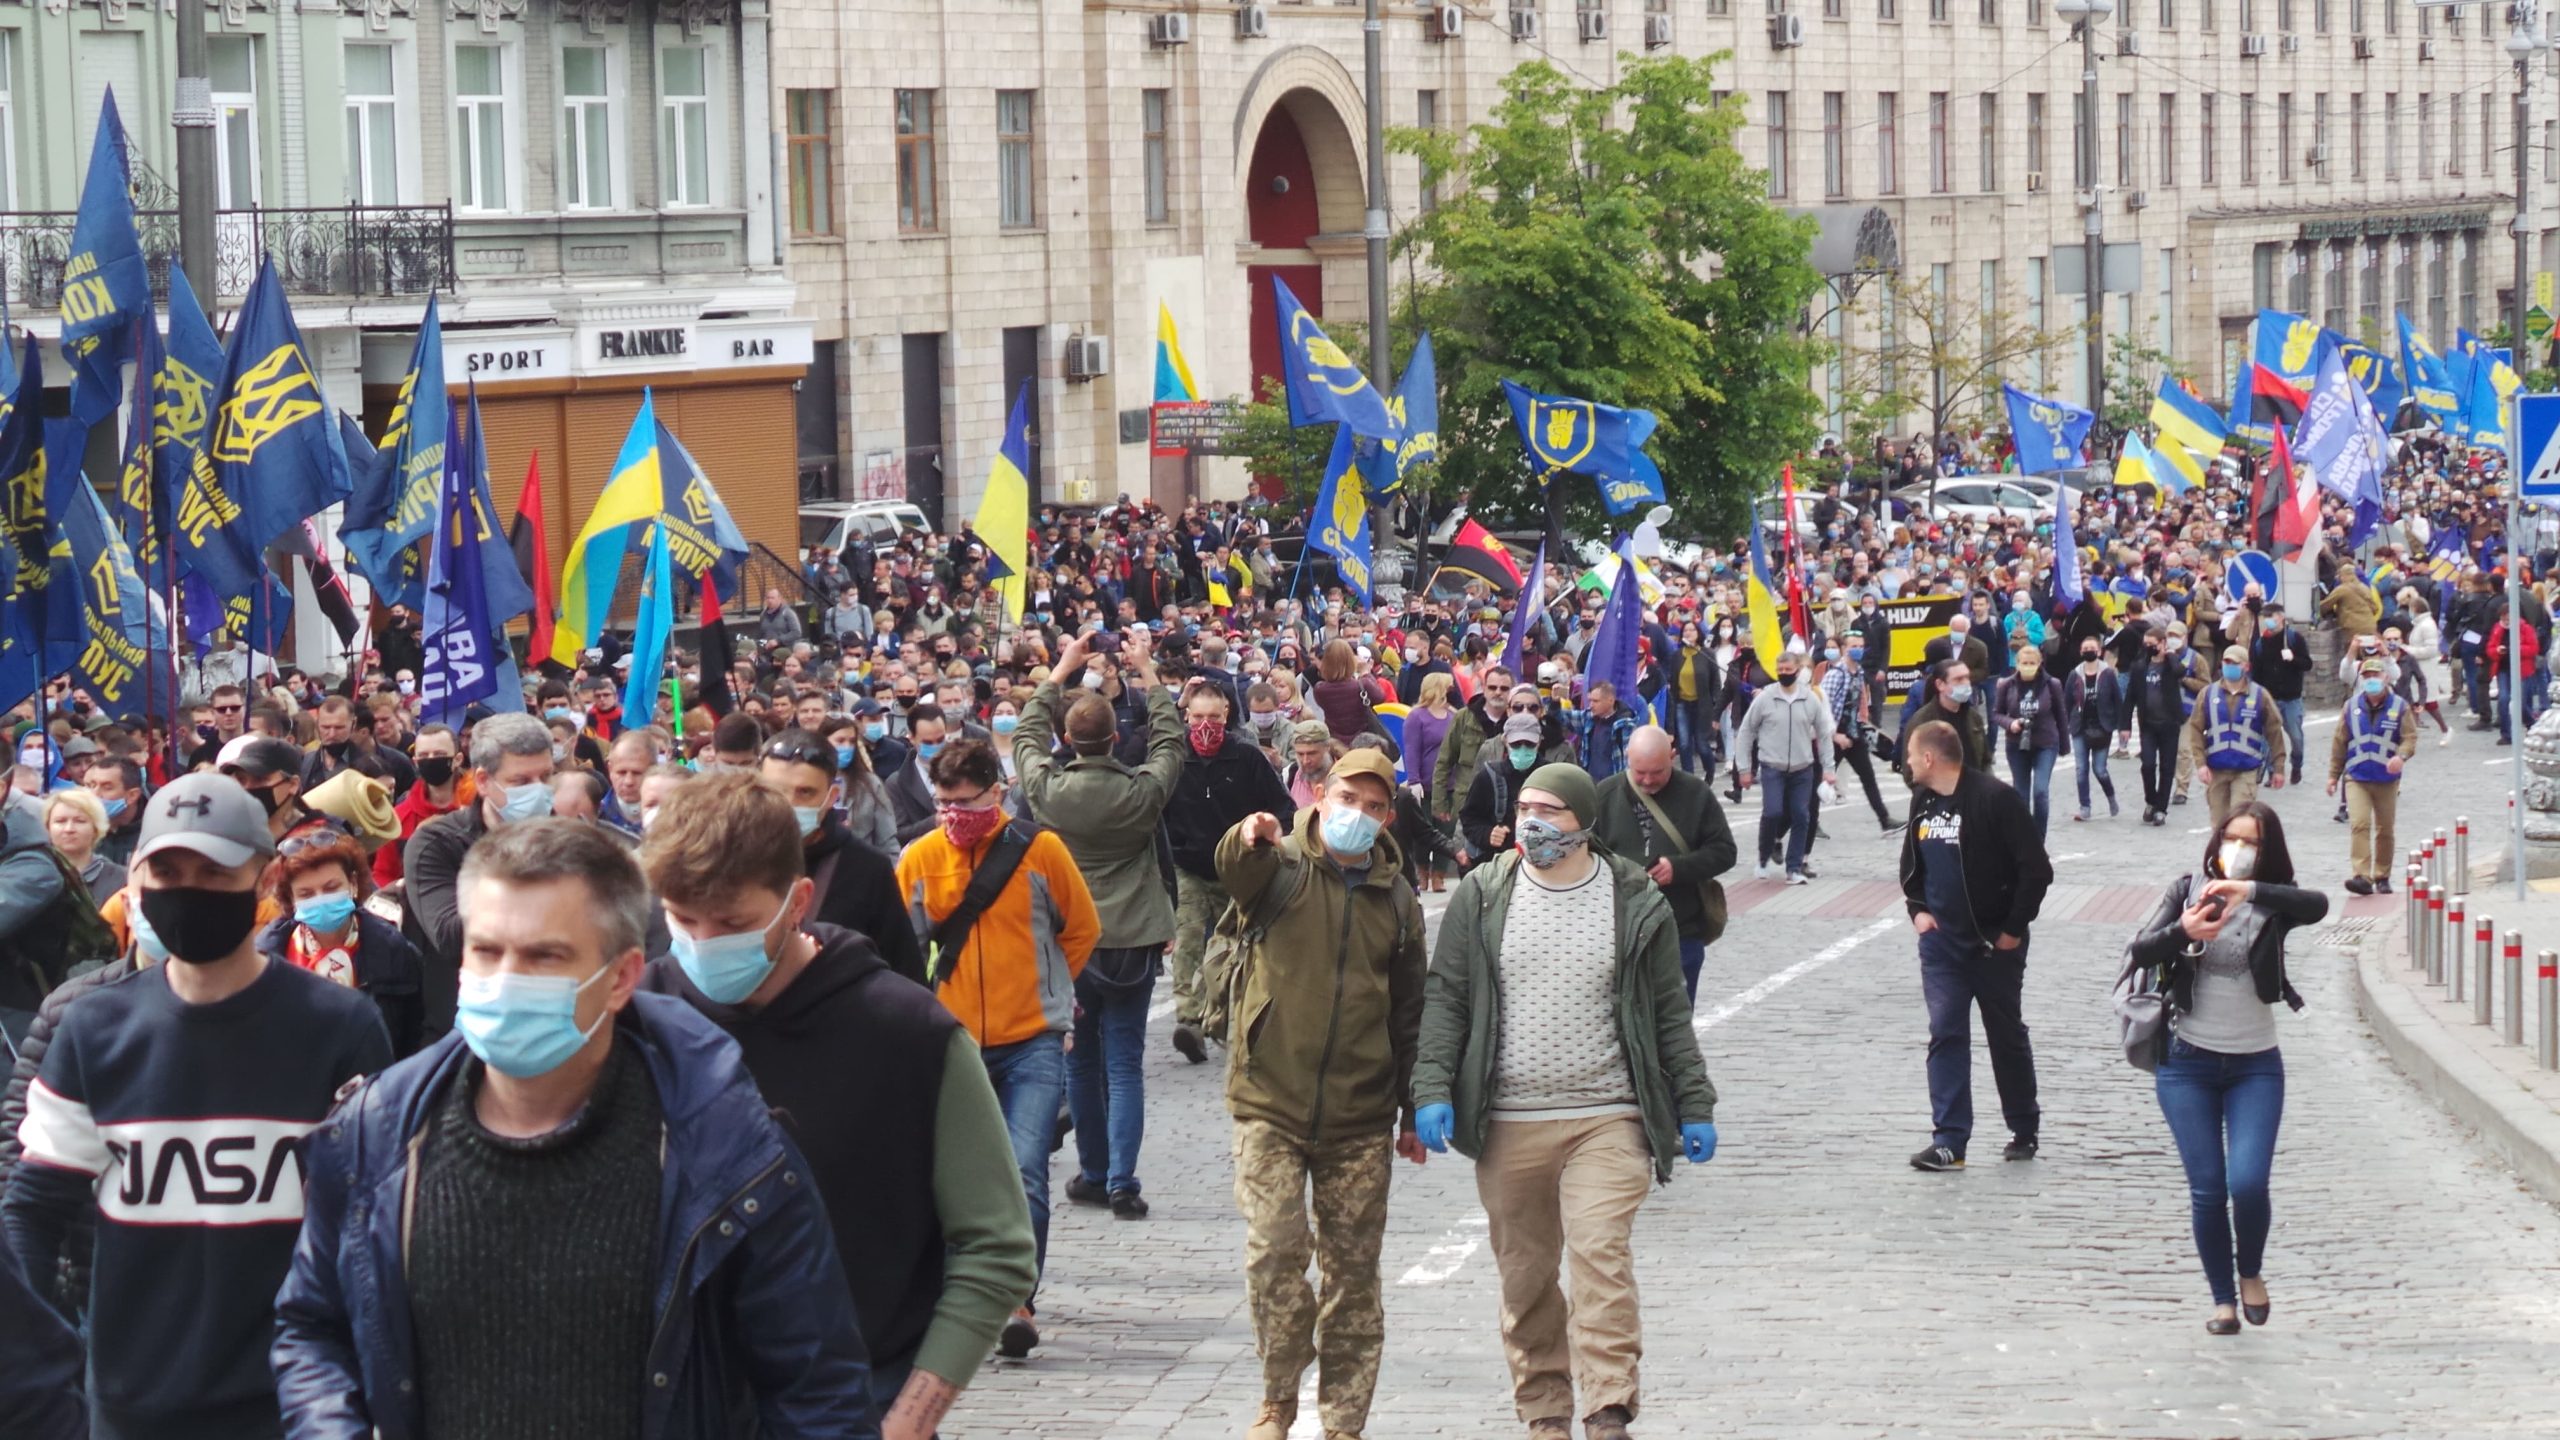 Ουκρανία: Εκατοντάδες άτομα διαδήλωσαν στο Κίεβο – Διαμαρτύρονται για την έλλειψη αλλαγής